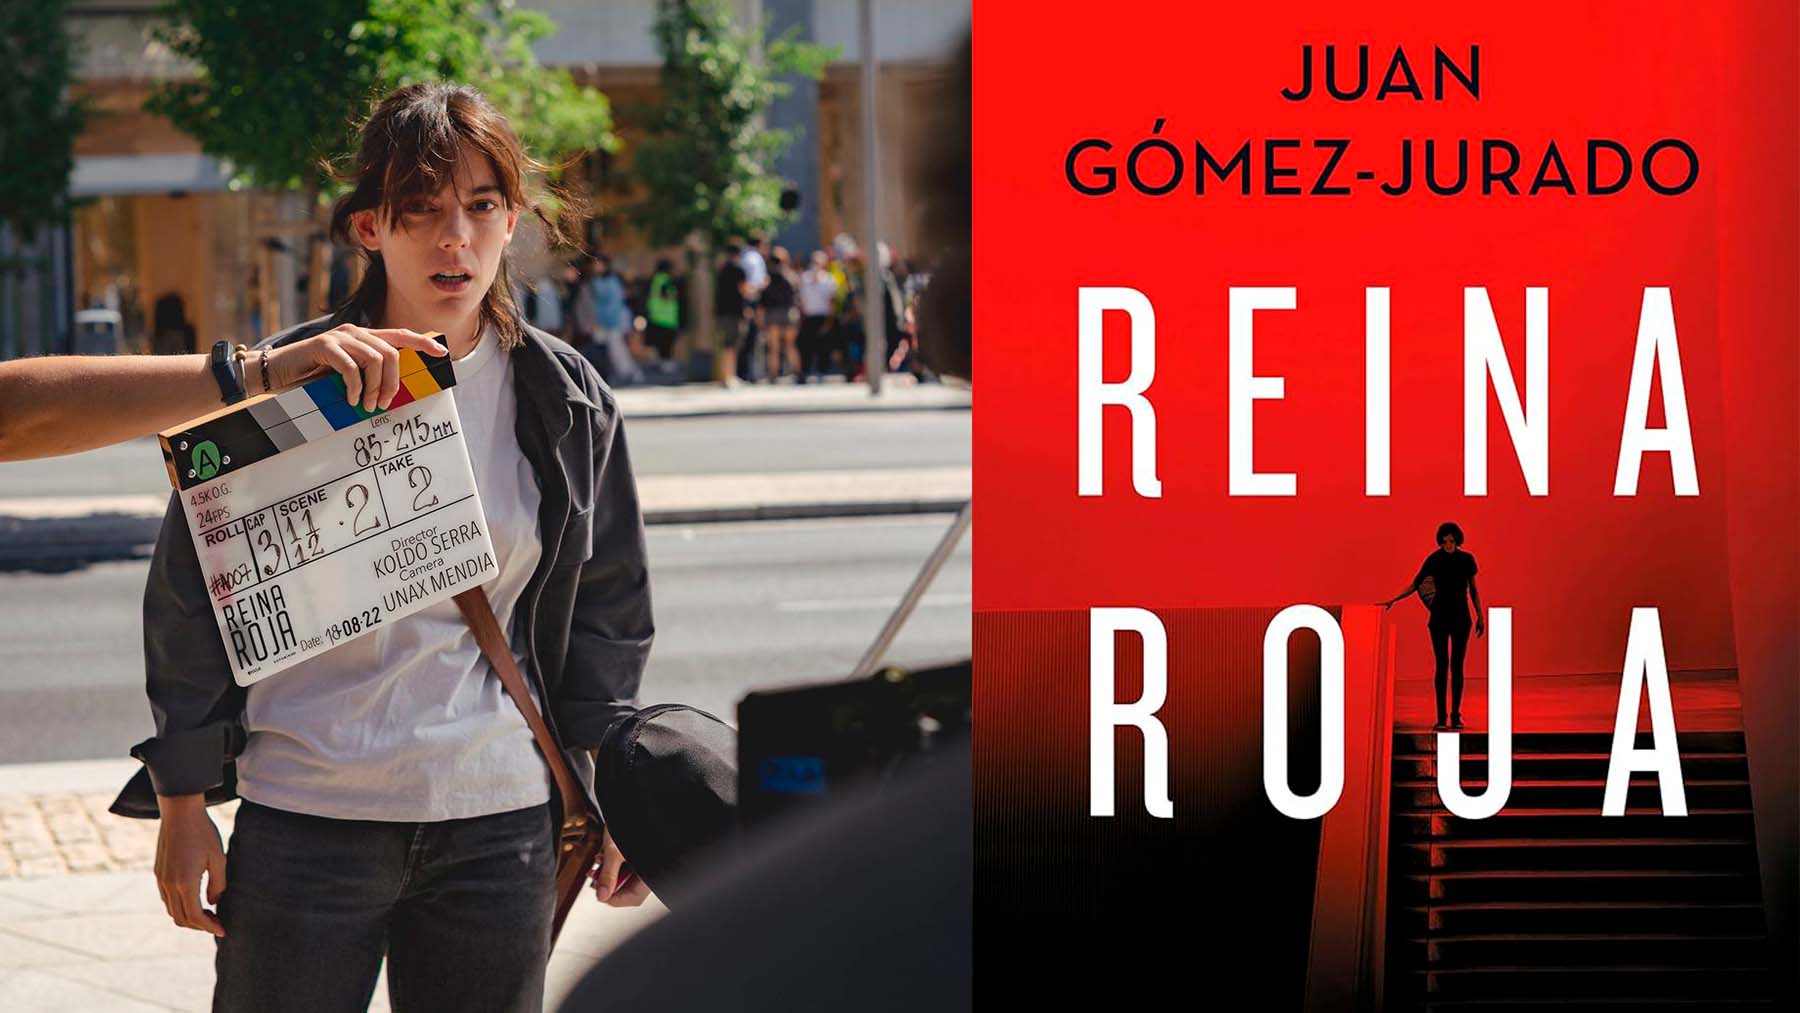 Merece la pena el nuevo libro de Juan Gómez-Jurado?